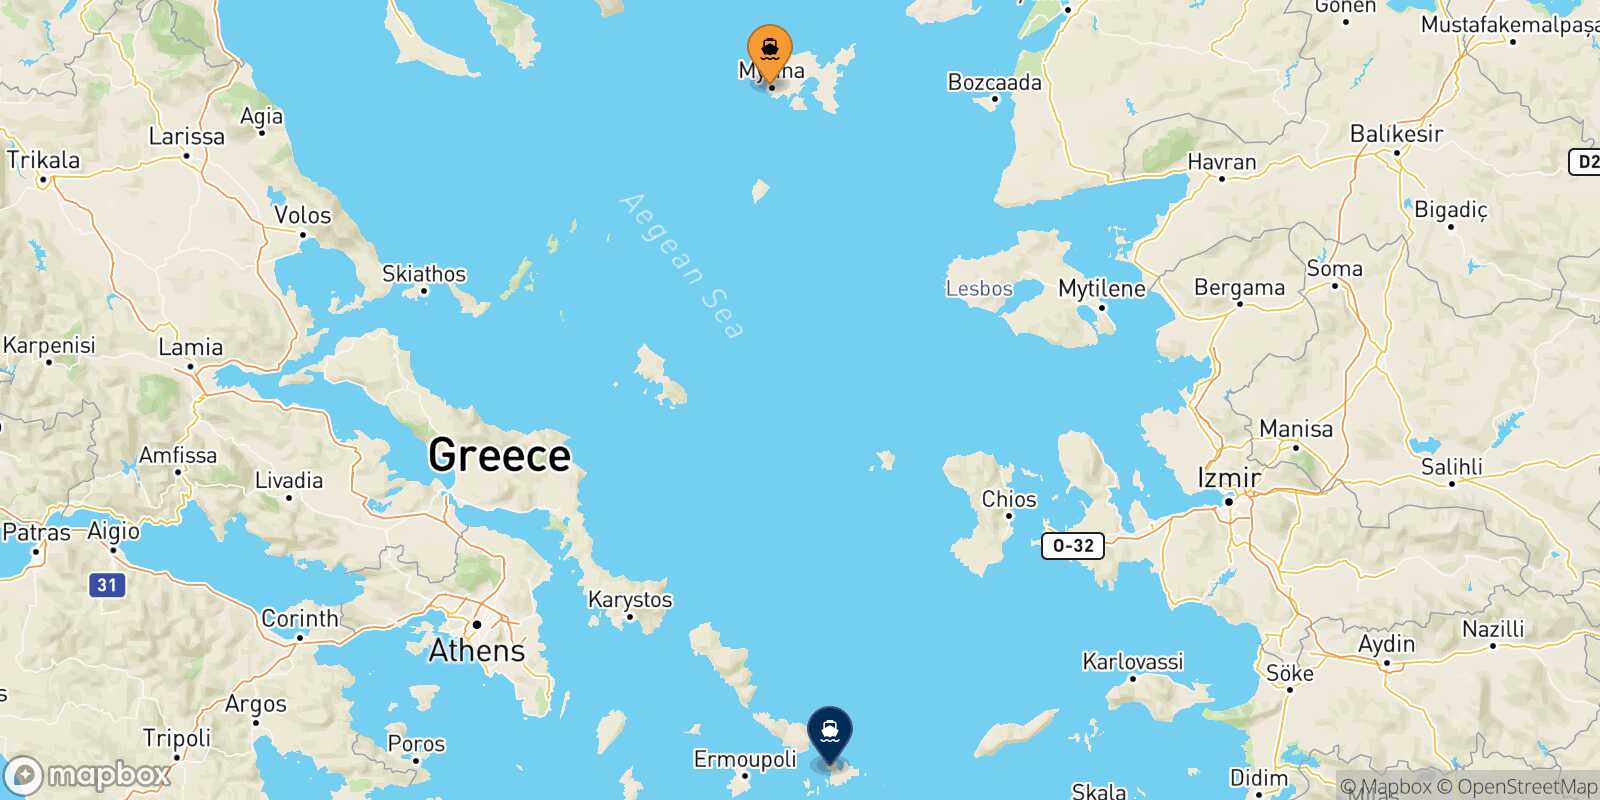 Myrina (Limnos) Mykonos route map